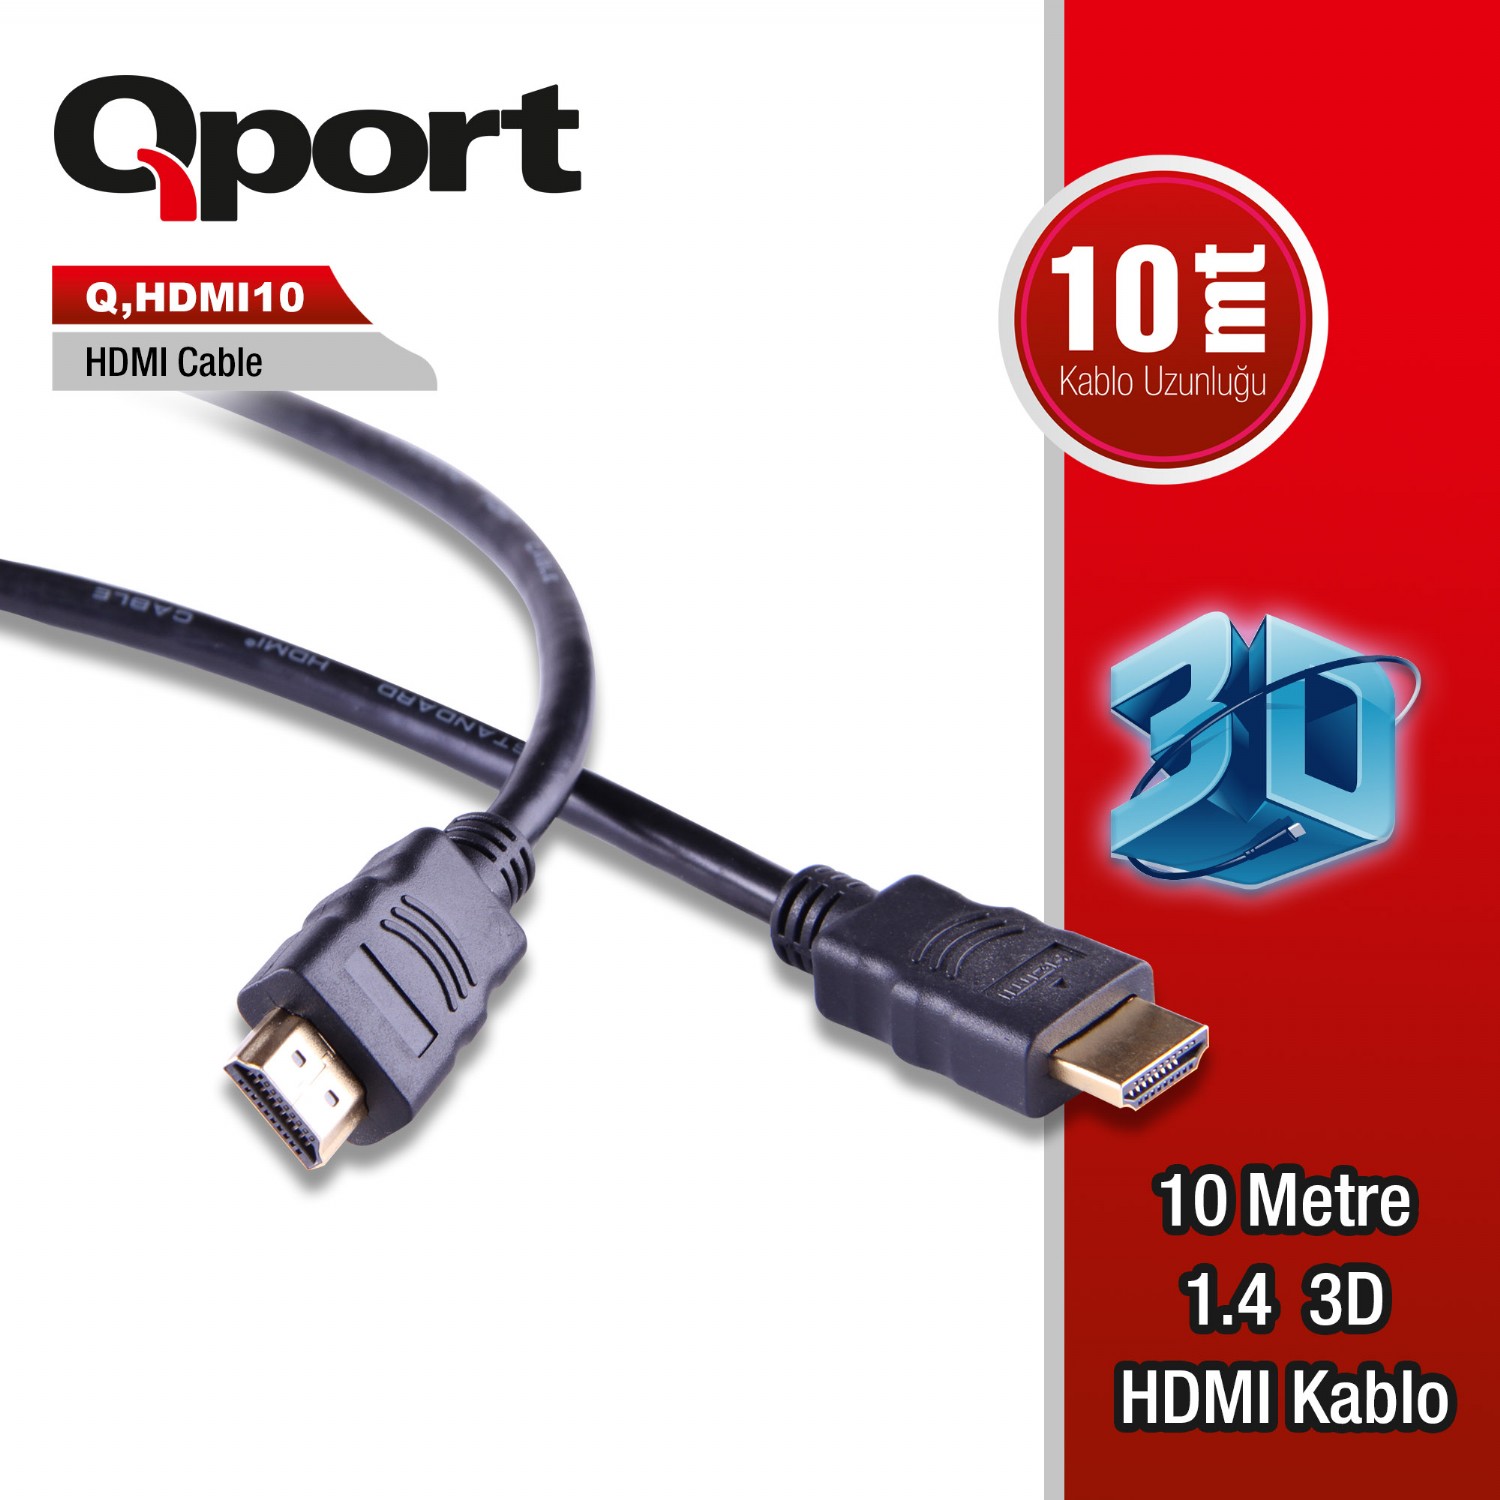 Q-HDMI10